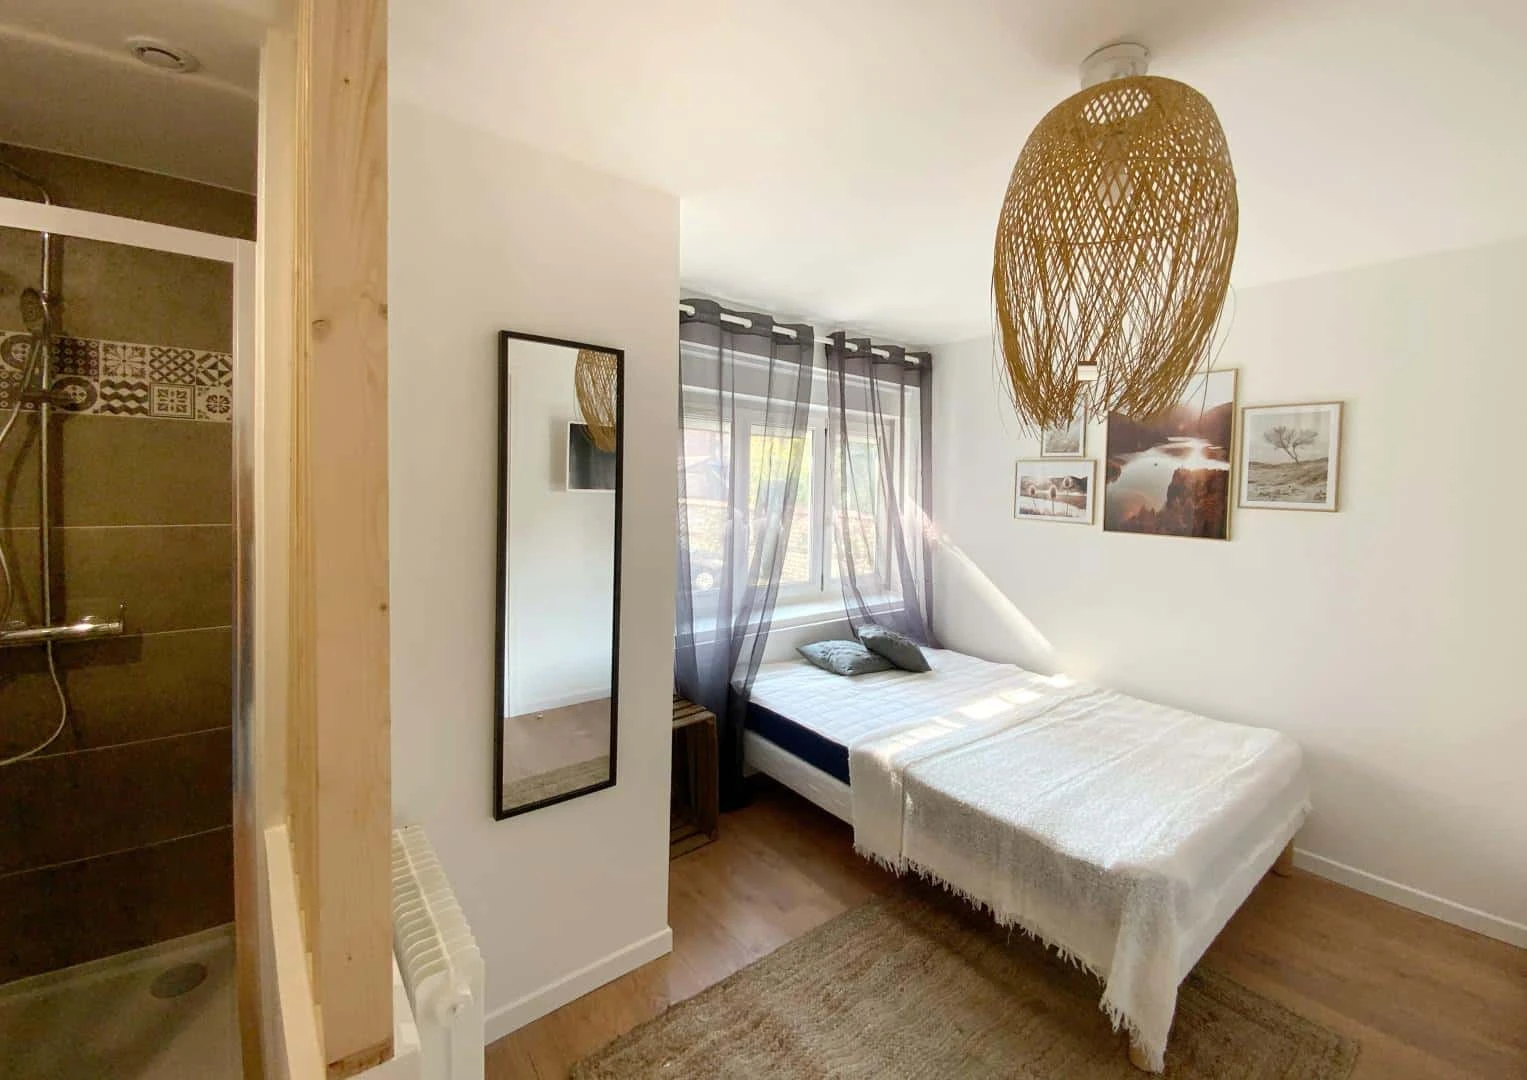 Rouen de çift kişilik yataklı kiralık oda